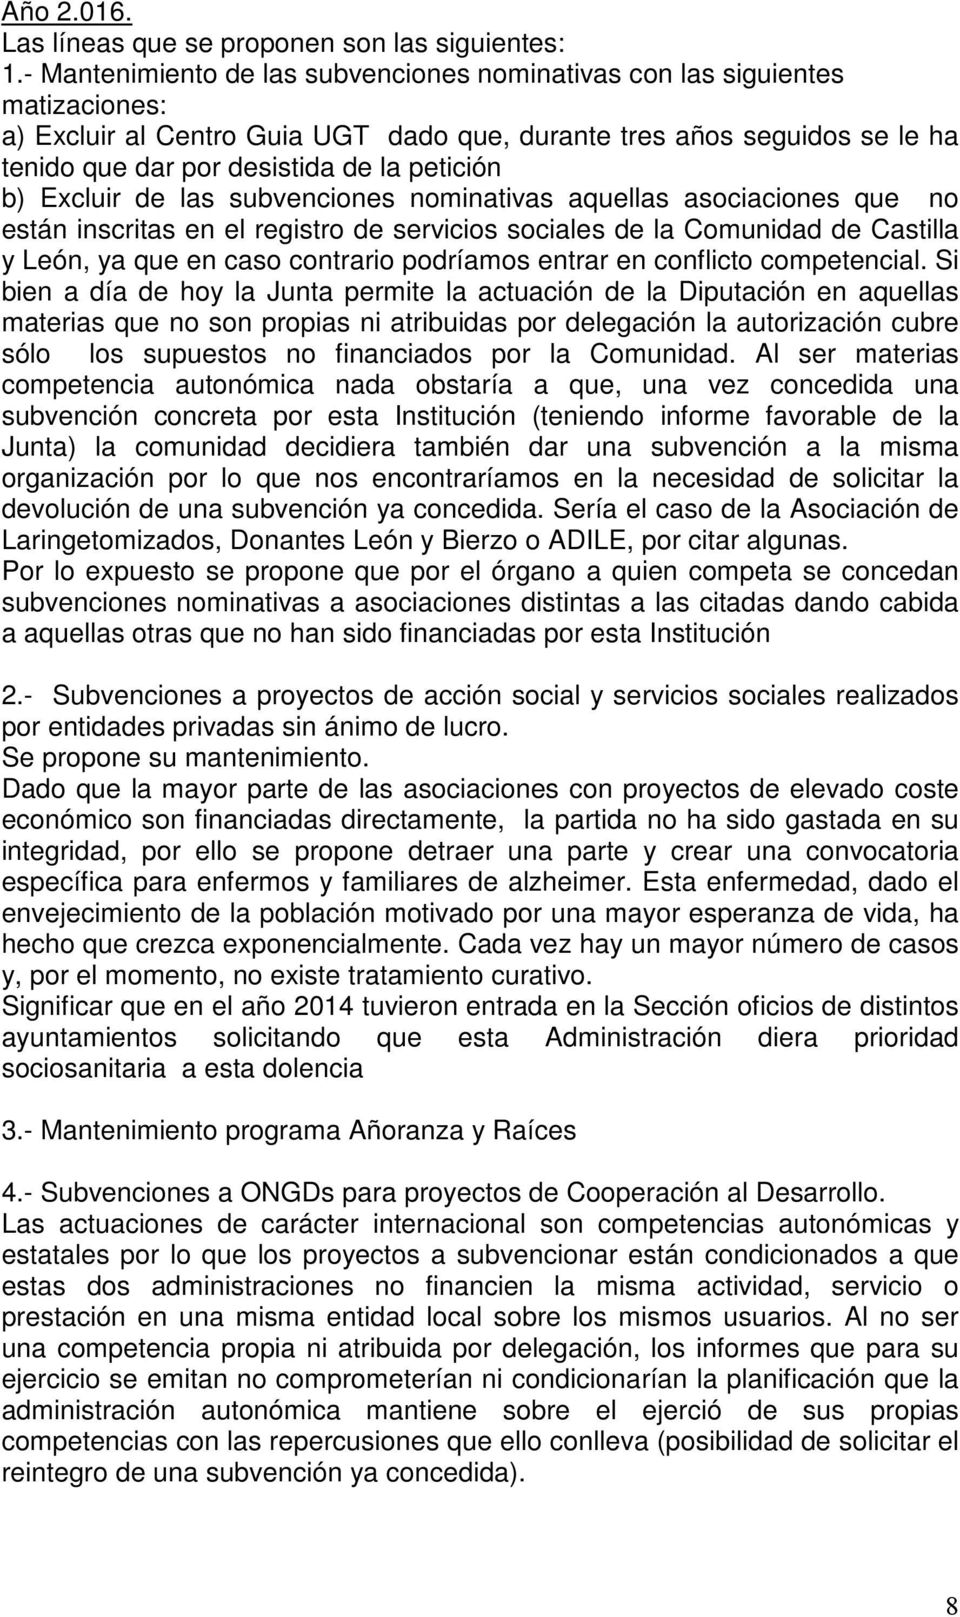 petición b) Excluir de las subvenciones nominativas aquellas asociaciones que no están inscritas en el registro de servicios sociales de la Comunidad de Castilla y León, ya que en caso contrario